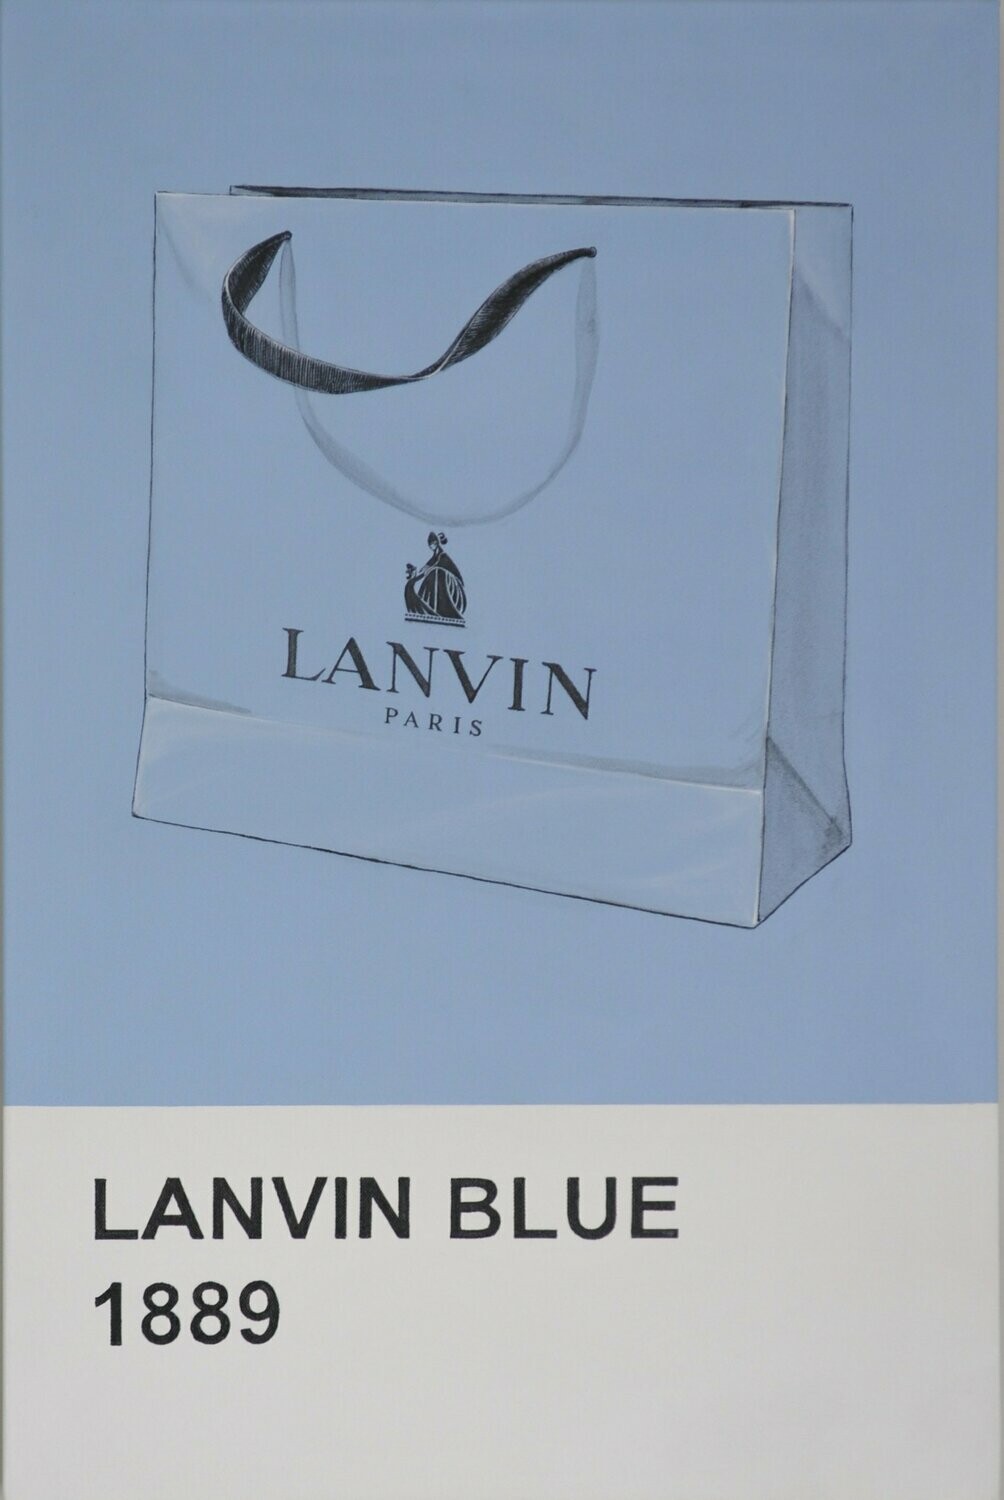 LANVIN BLUE 1889